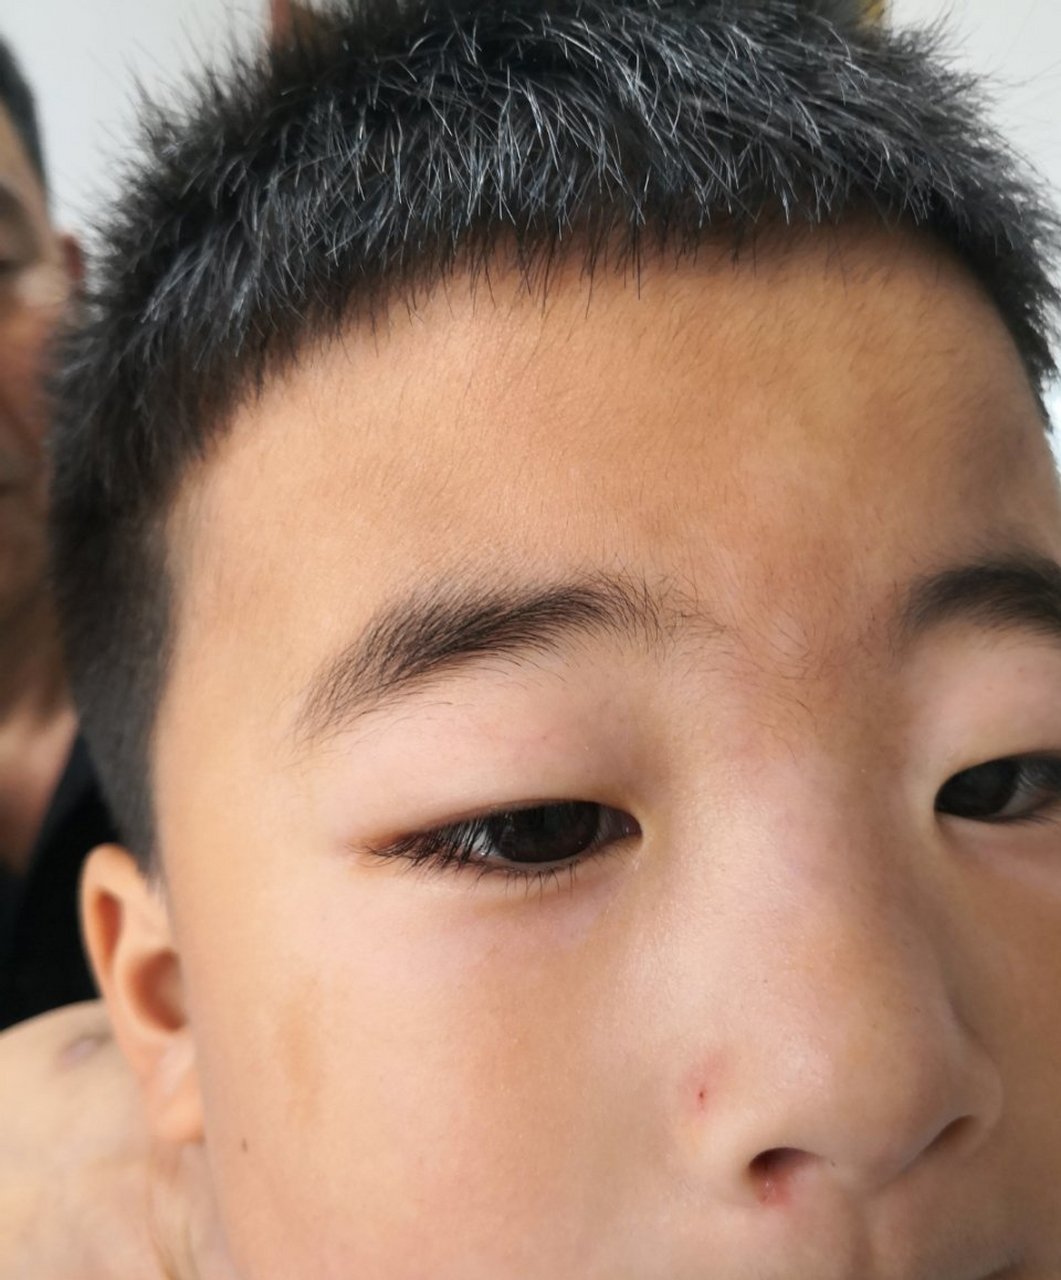 儿童面部淡色白斑有特应性皮炎的诊断考虑单纯糠疹